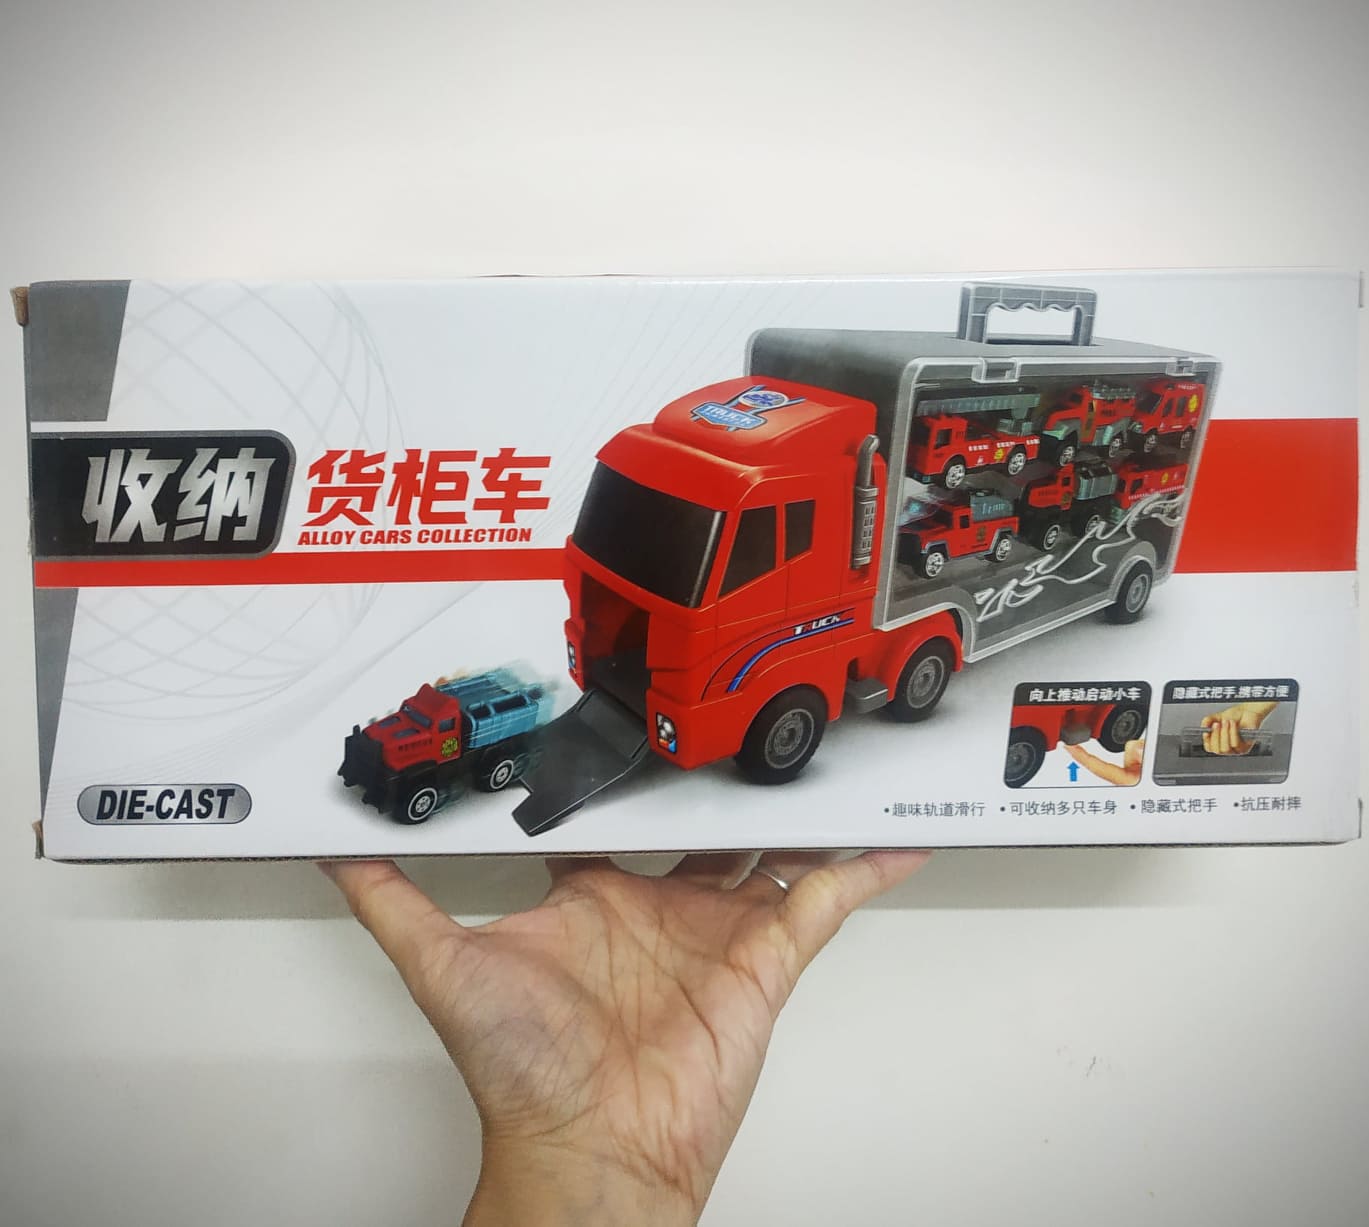 Bộ đồ chơi container vận chuyển đội xe cứu hỏa - cảnh sát - quân sự - cứu hộ nhiều chủ đề (mẫu ngẫu nhiên)